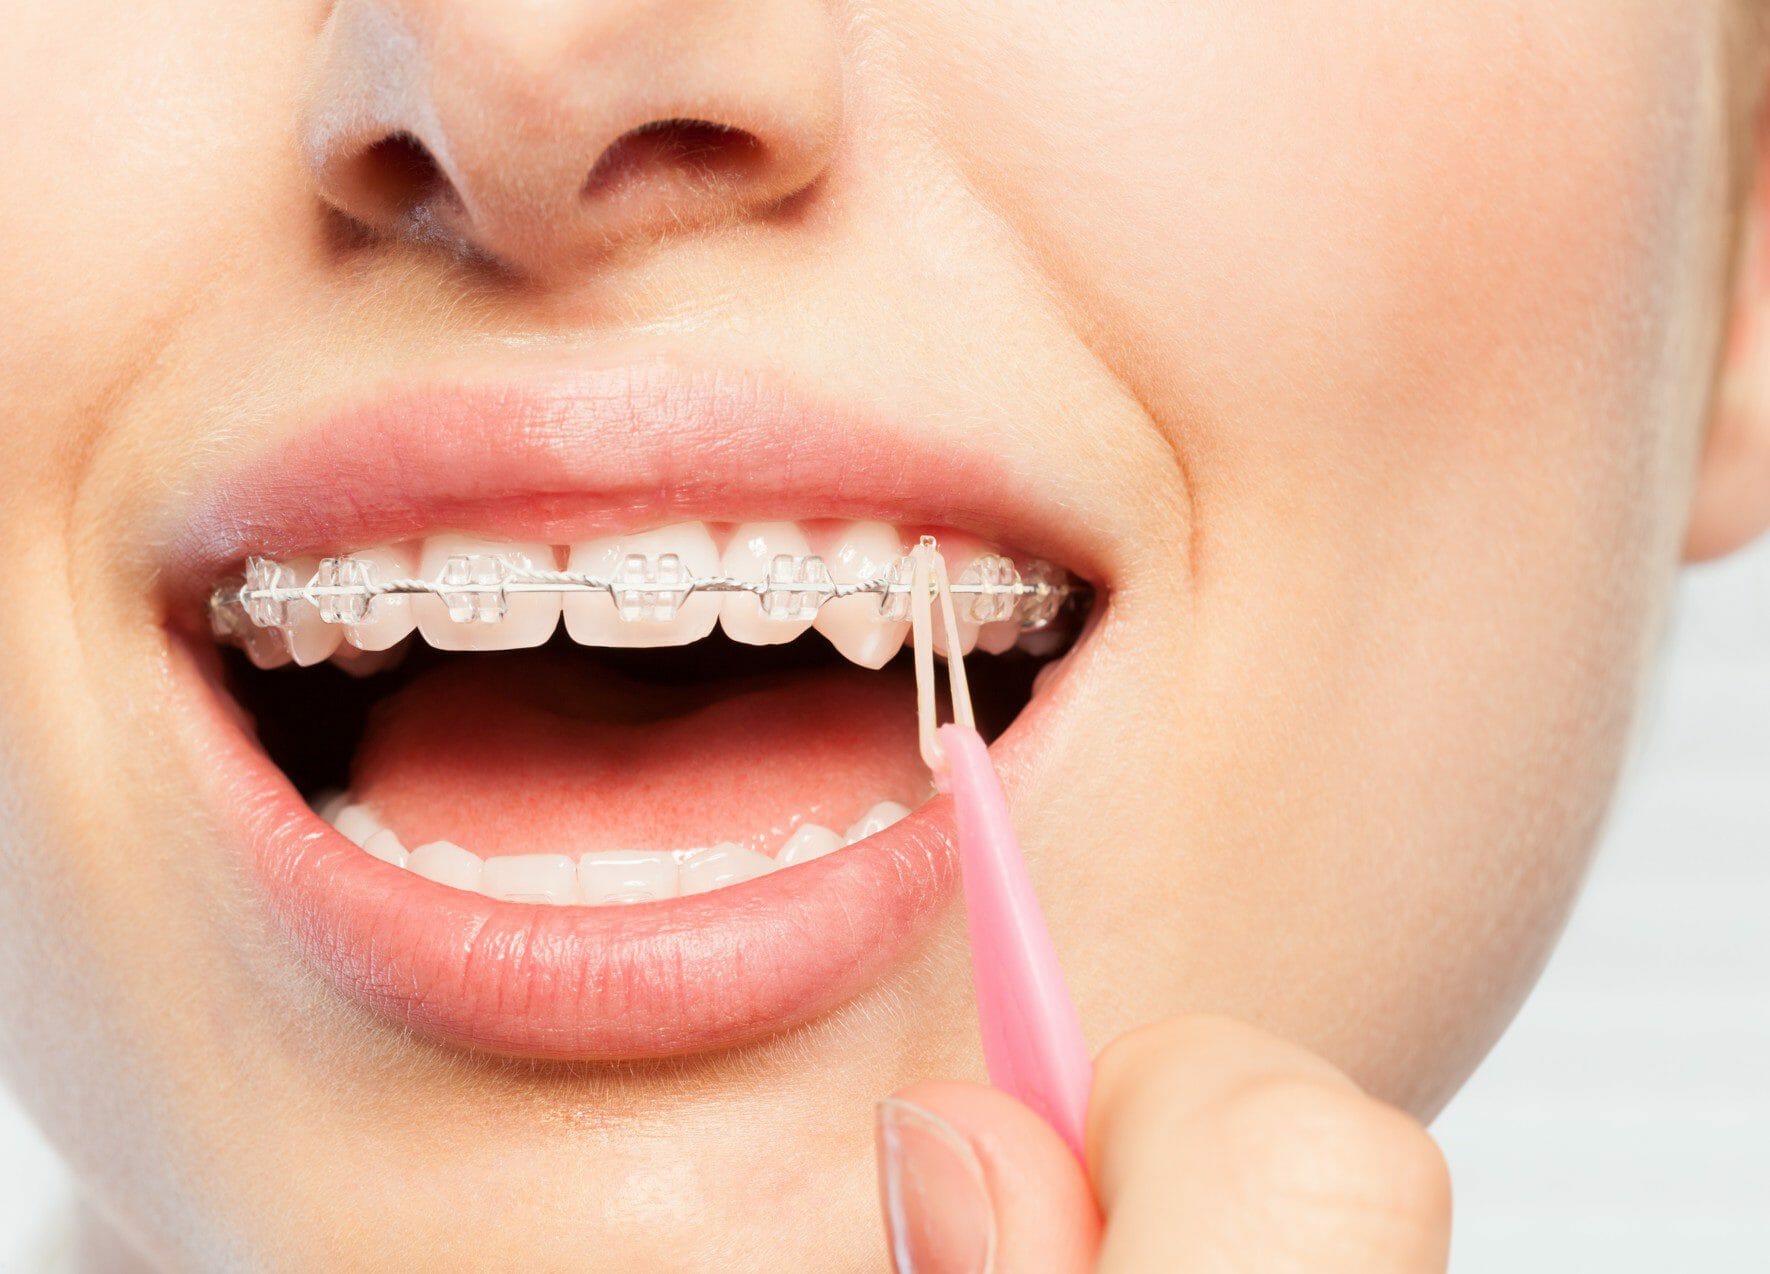 https://burkeredfordorthodontists.com/images/elastic-bands-for-braces-orthodontist.jpg